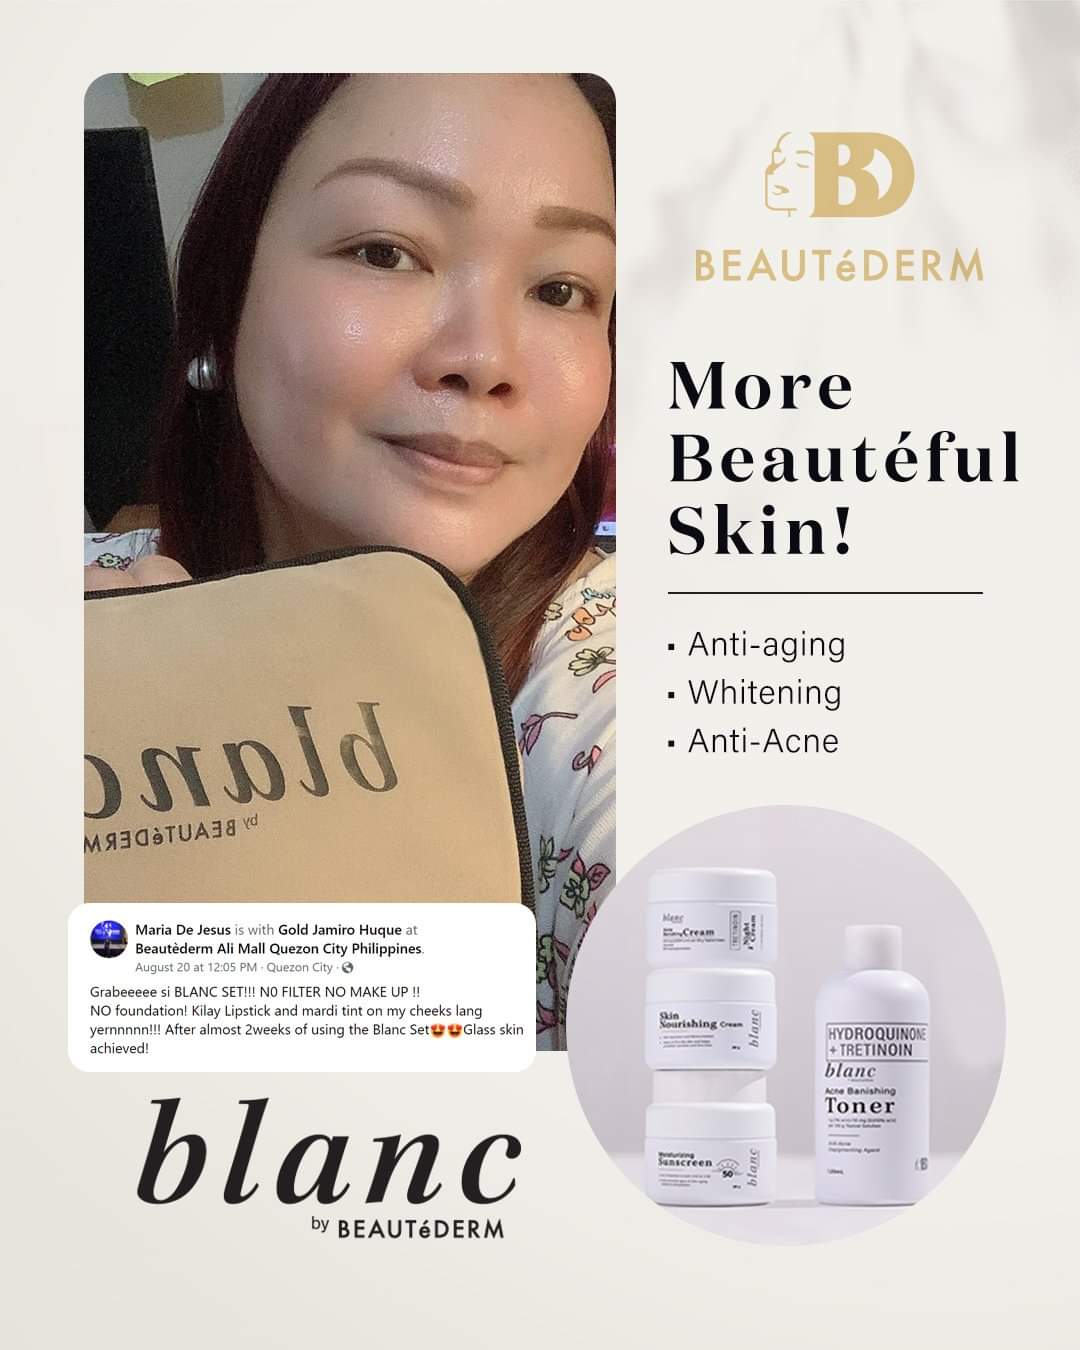 Blanc - Acne Banishing Cream 20g